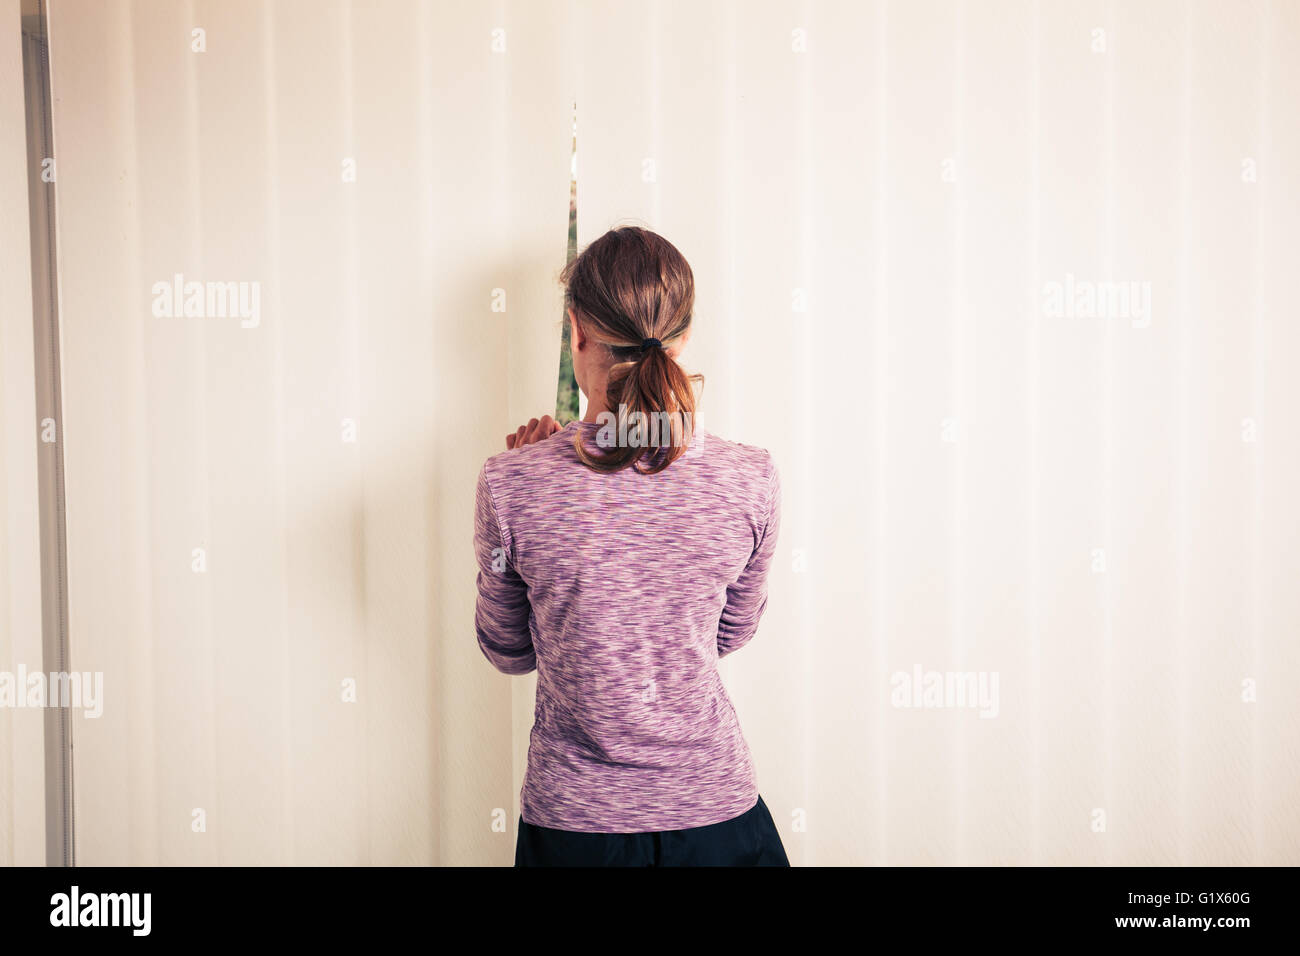 Une jeune femme se tient debout par les stores d'une fenêtre du sol au plafond Banque D'Images